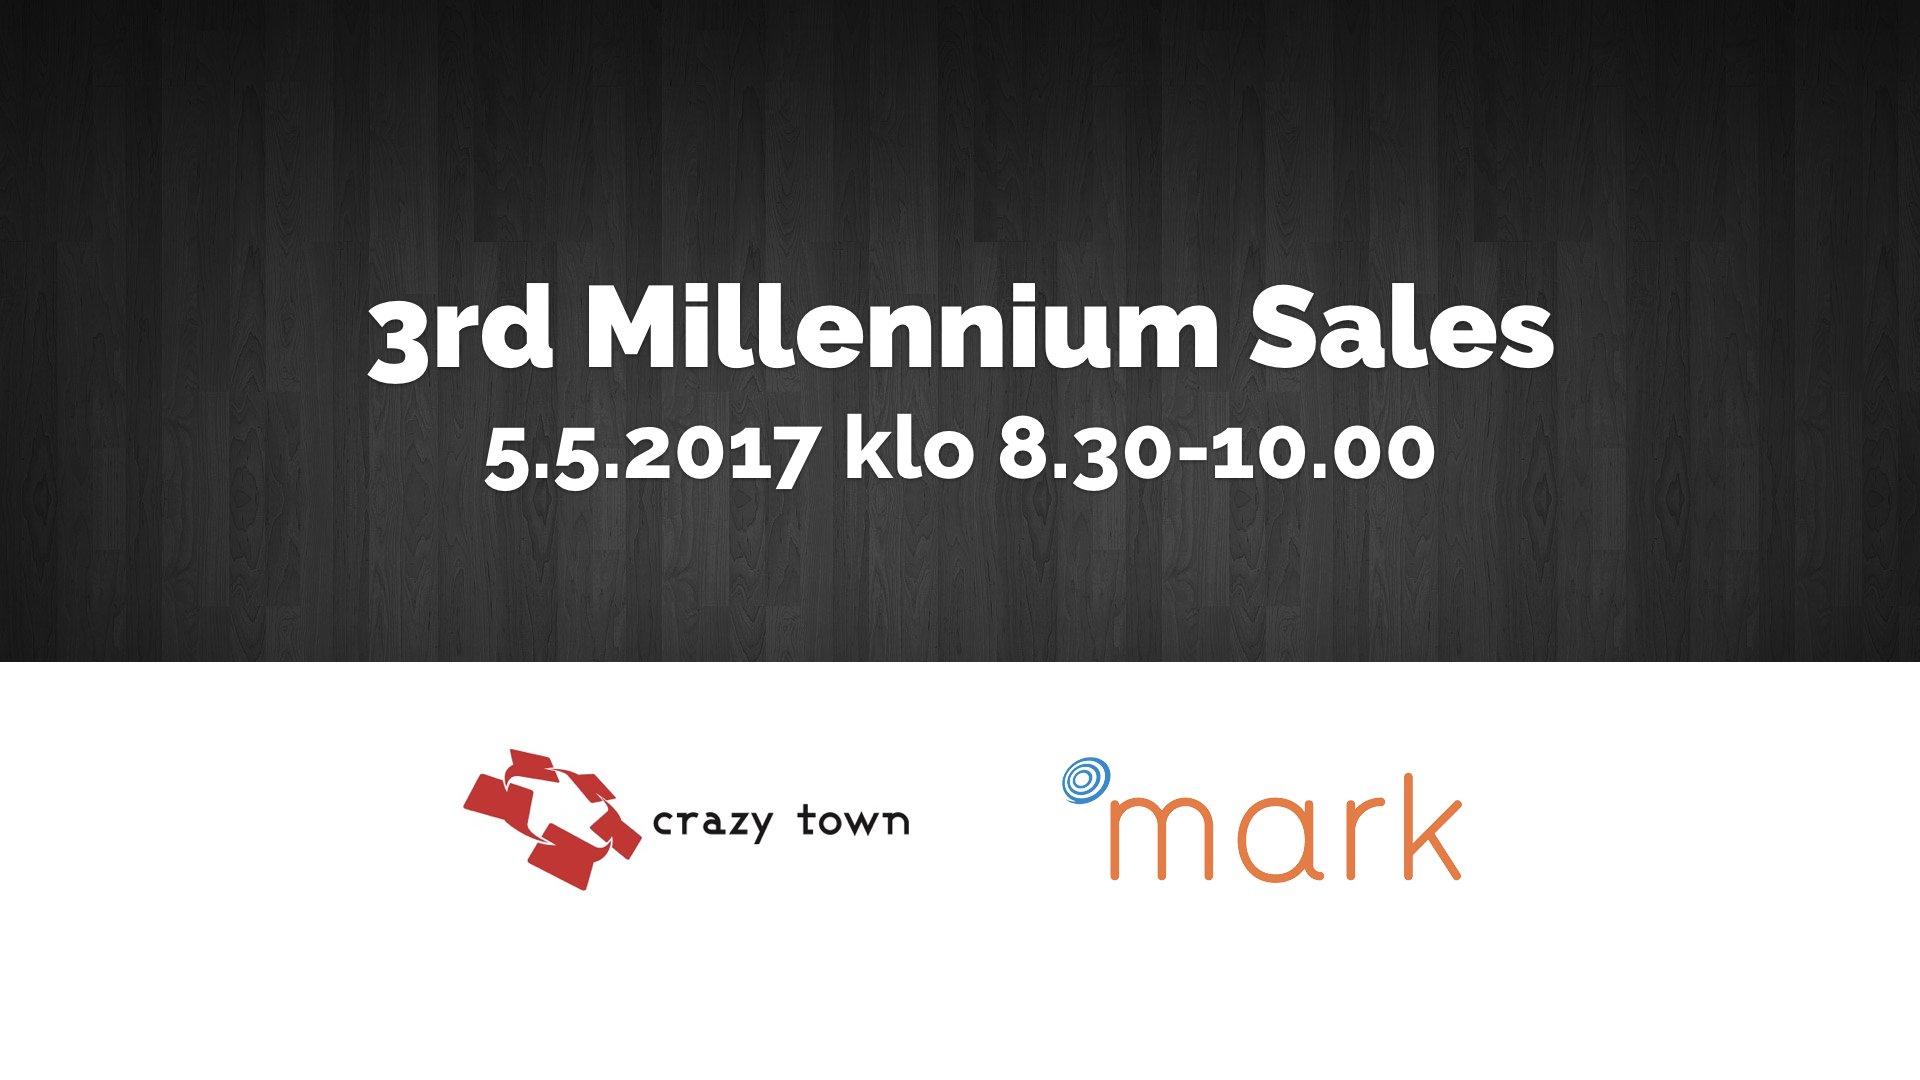 5.5.2017 – 3rd Millennium Sales (Hml)